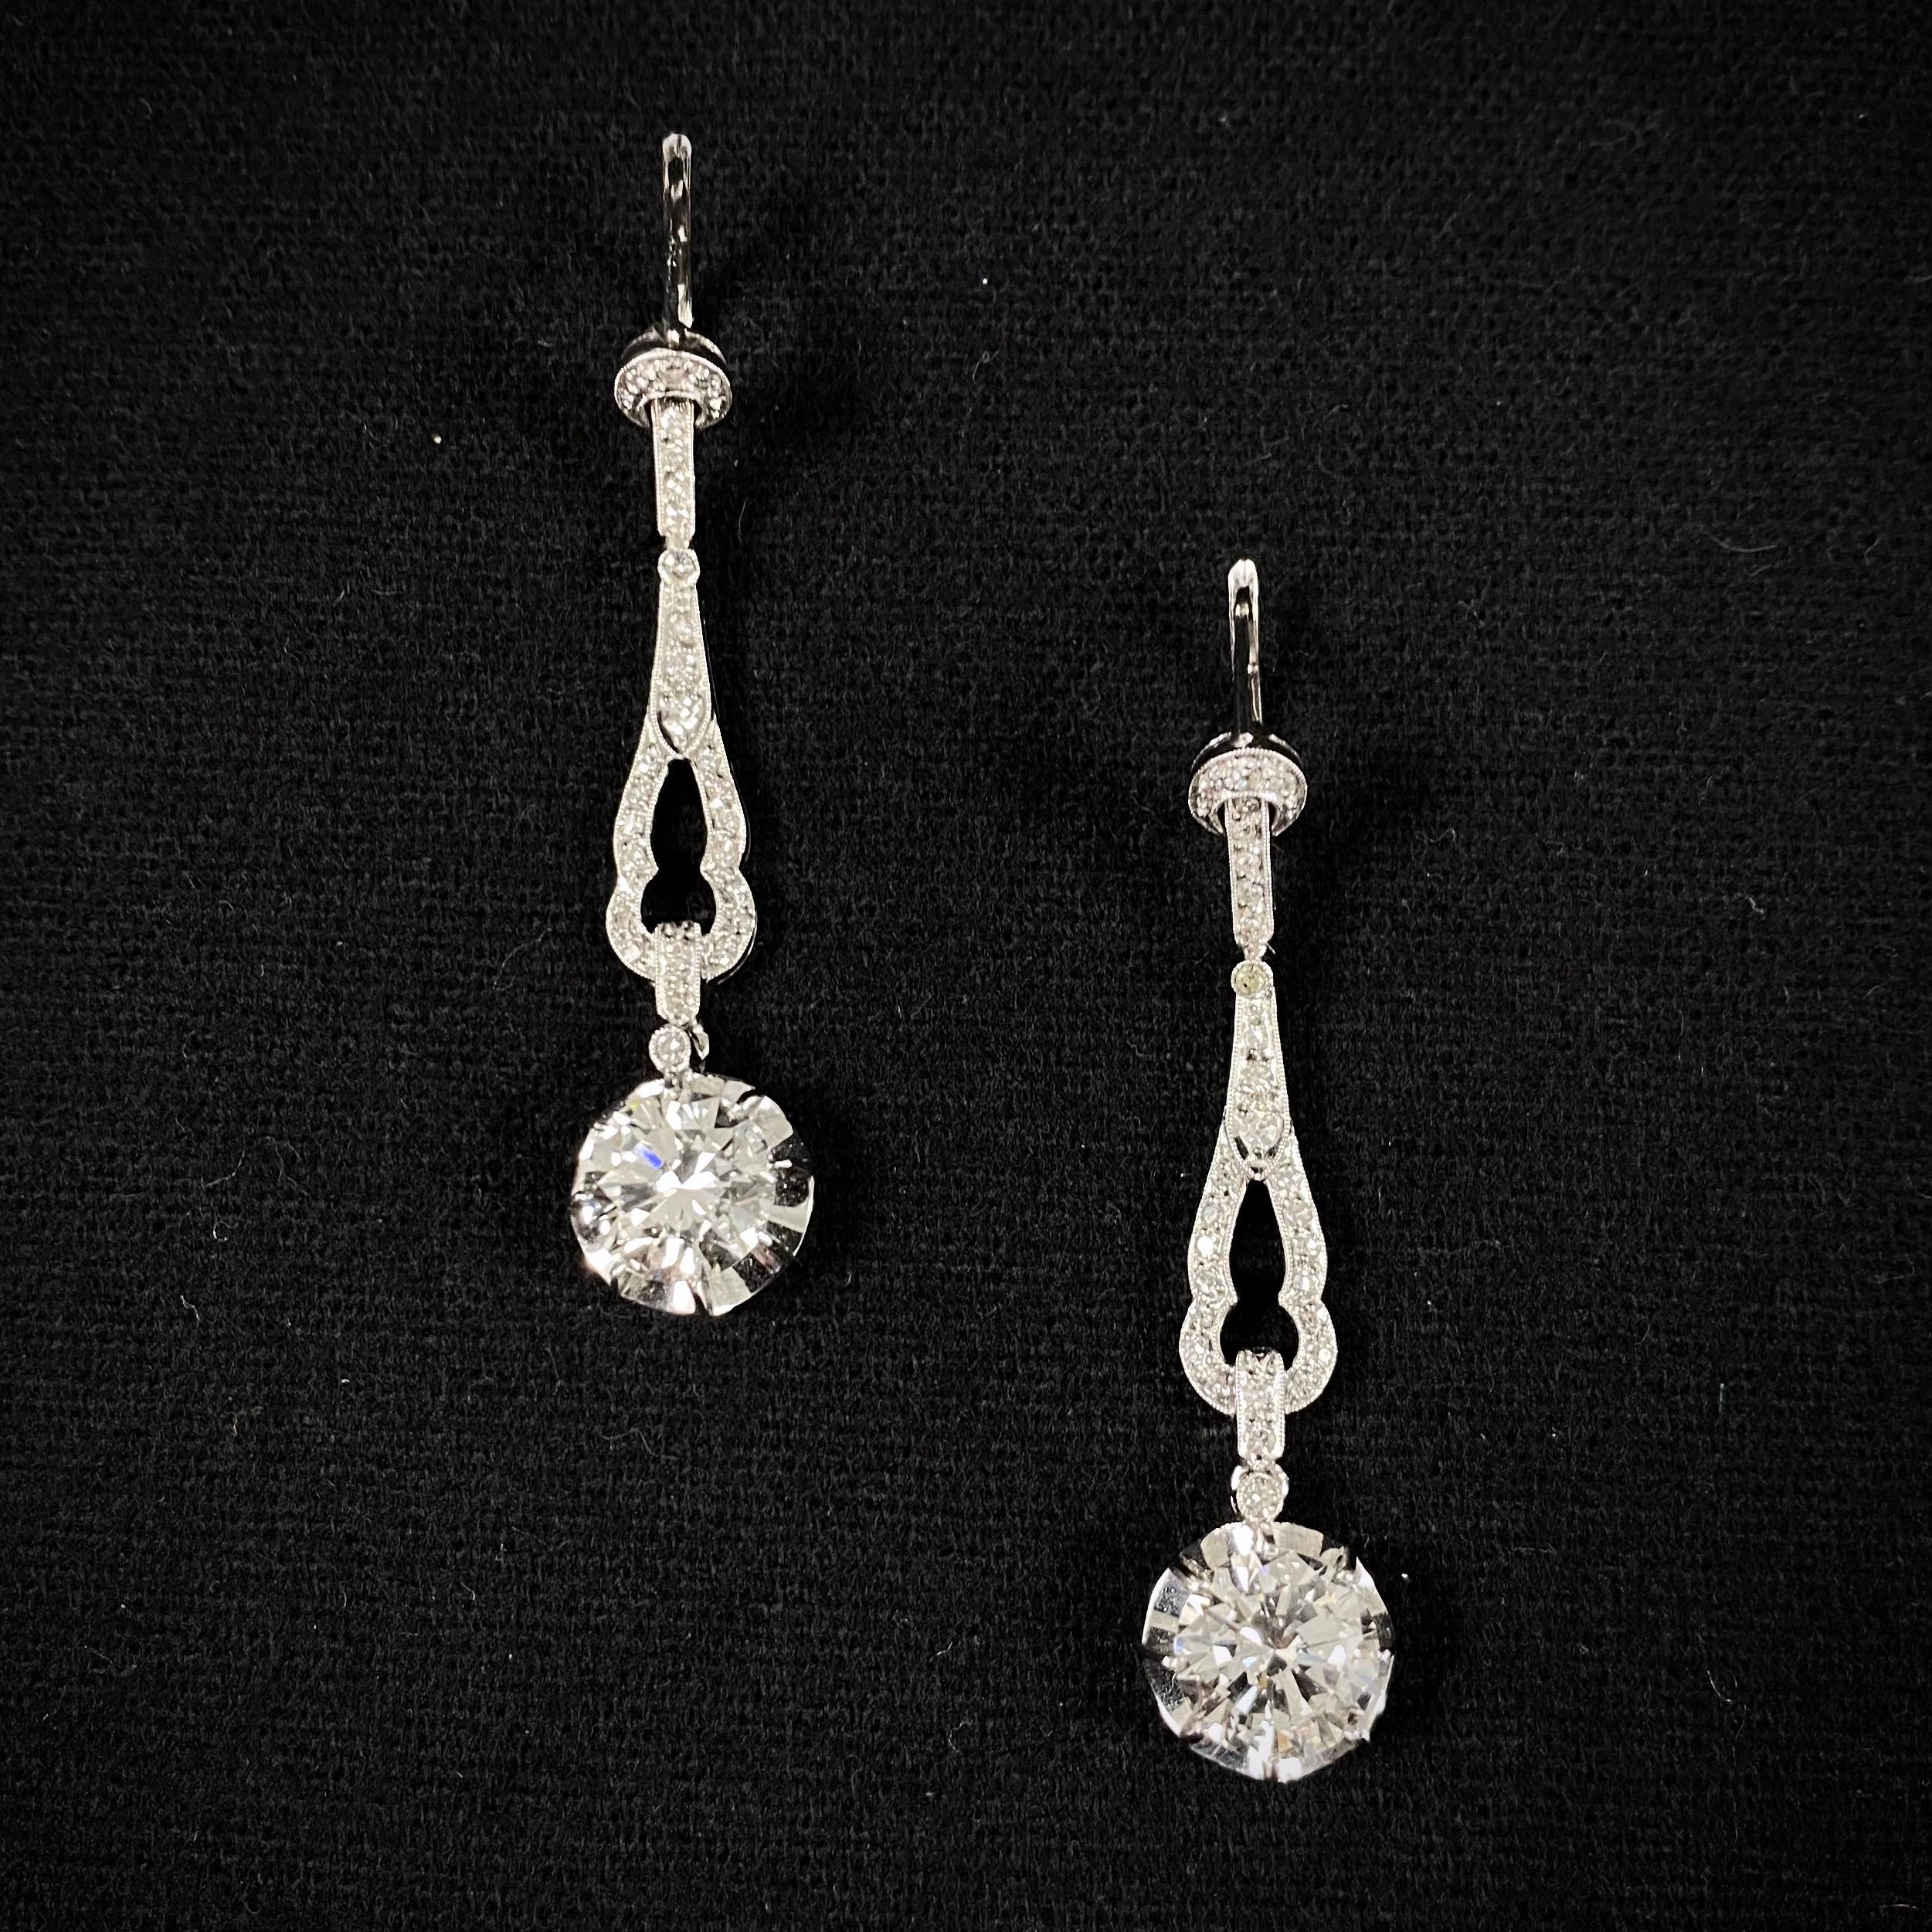 Vintage 4.04 Carat VVS Art Deco Style Diamond Pendant Drop Earrings White Gold For Sale 9